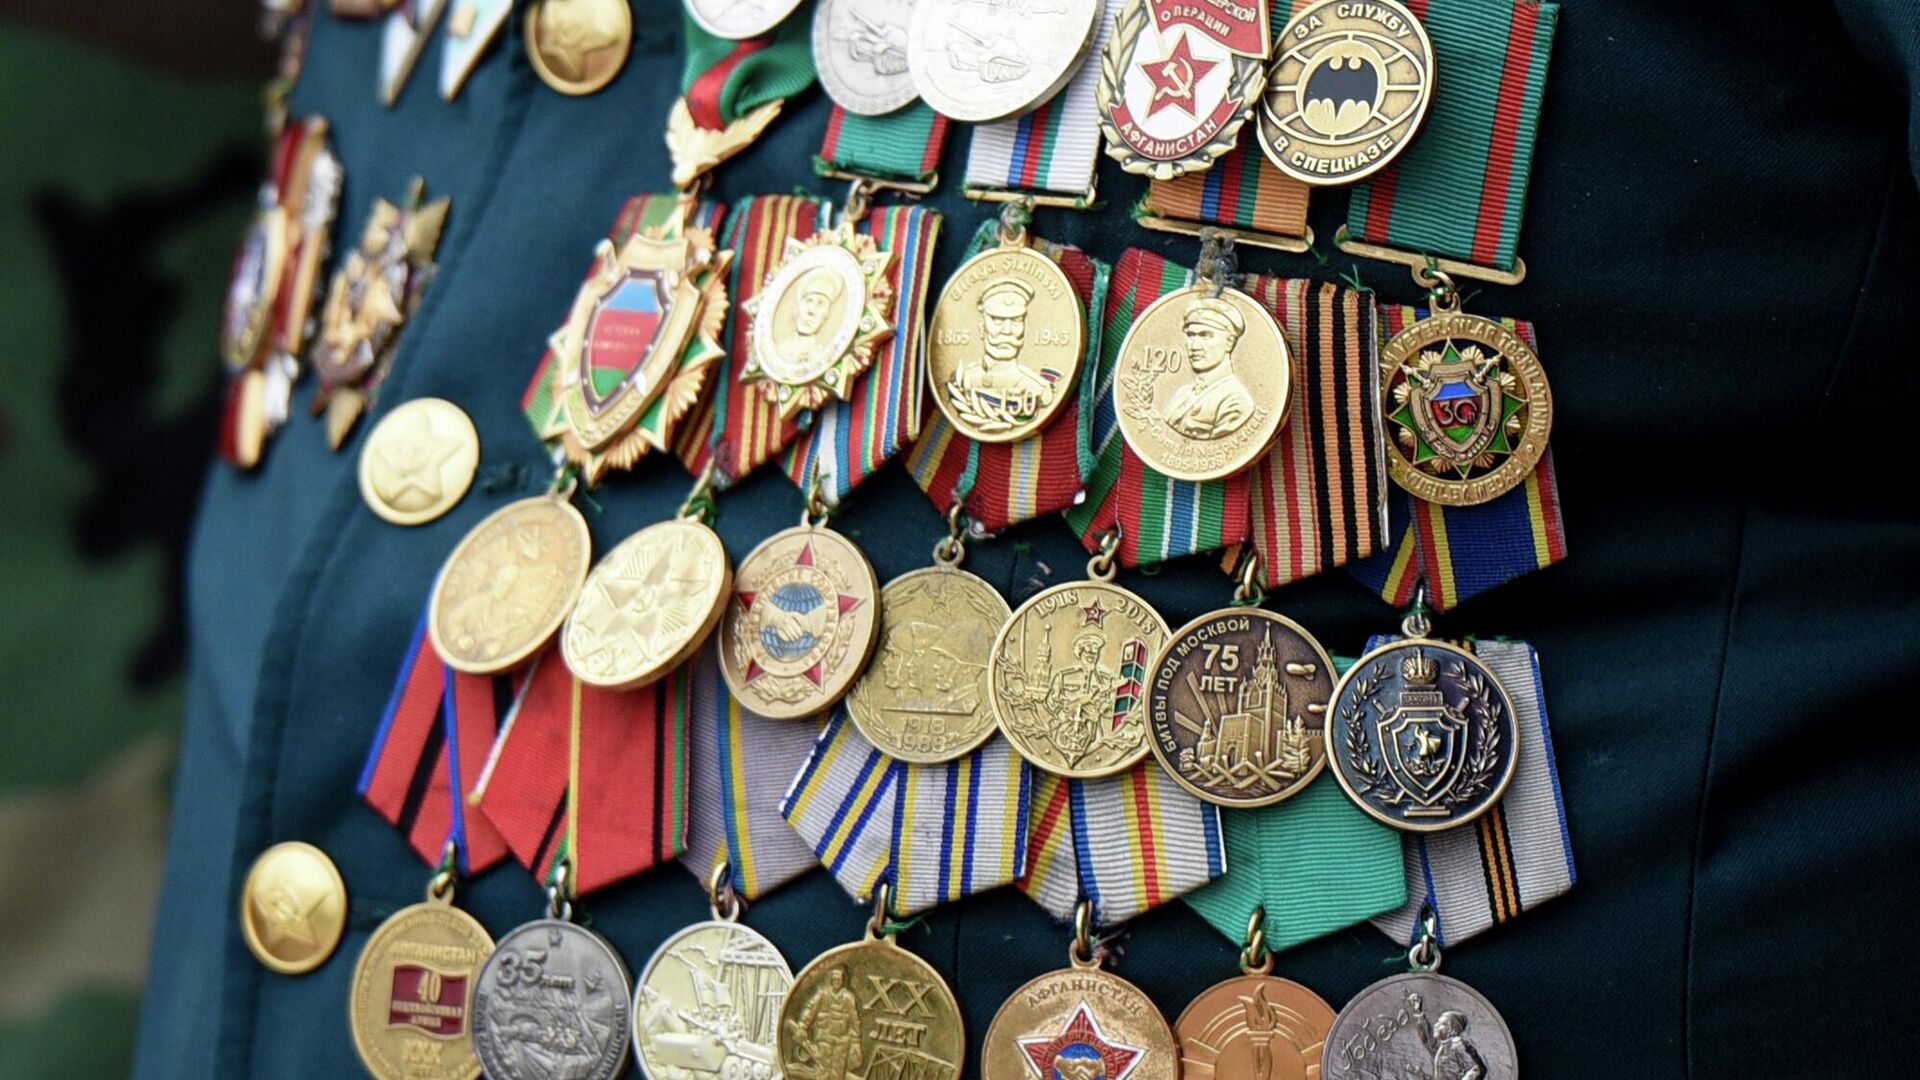 Vetran medalları - Sputnik Azərbaycan, 1920, 13.01.2023